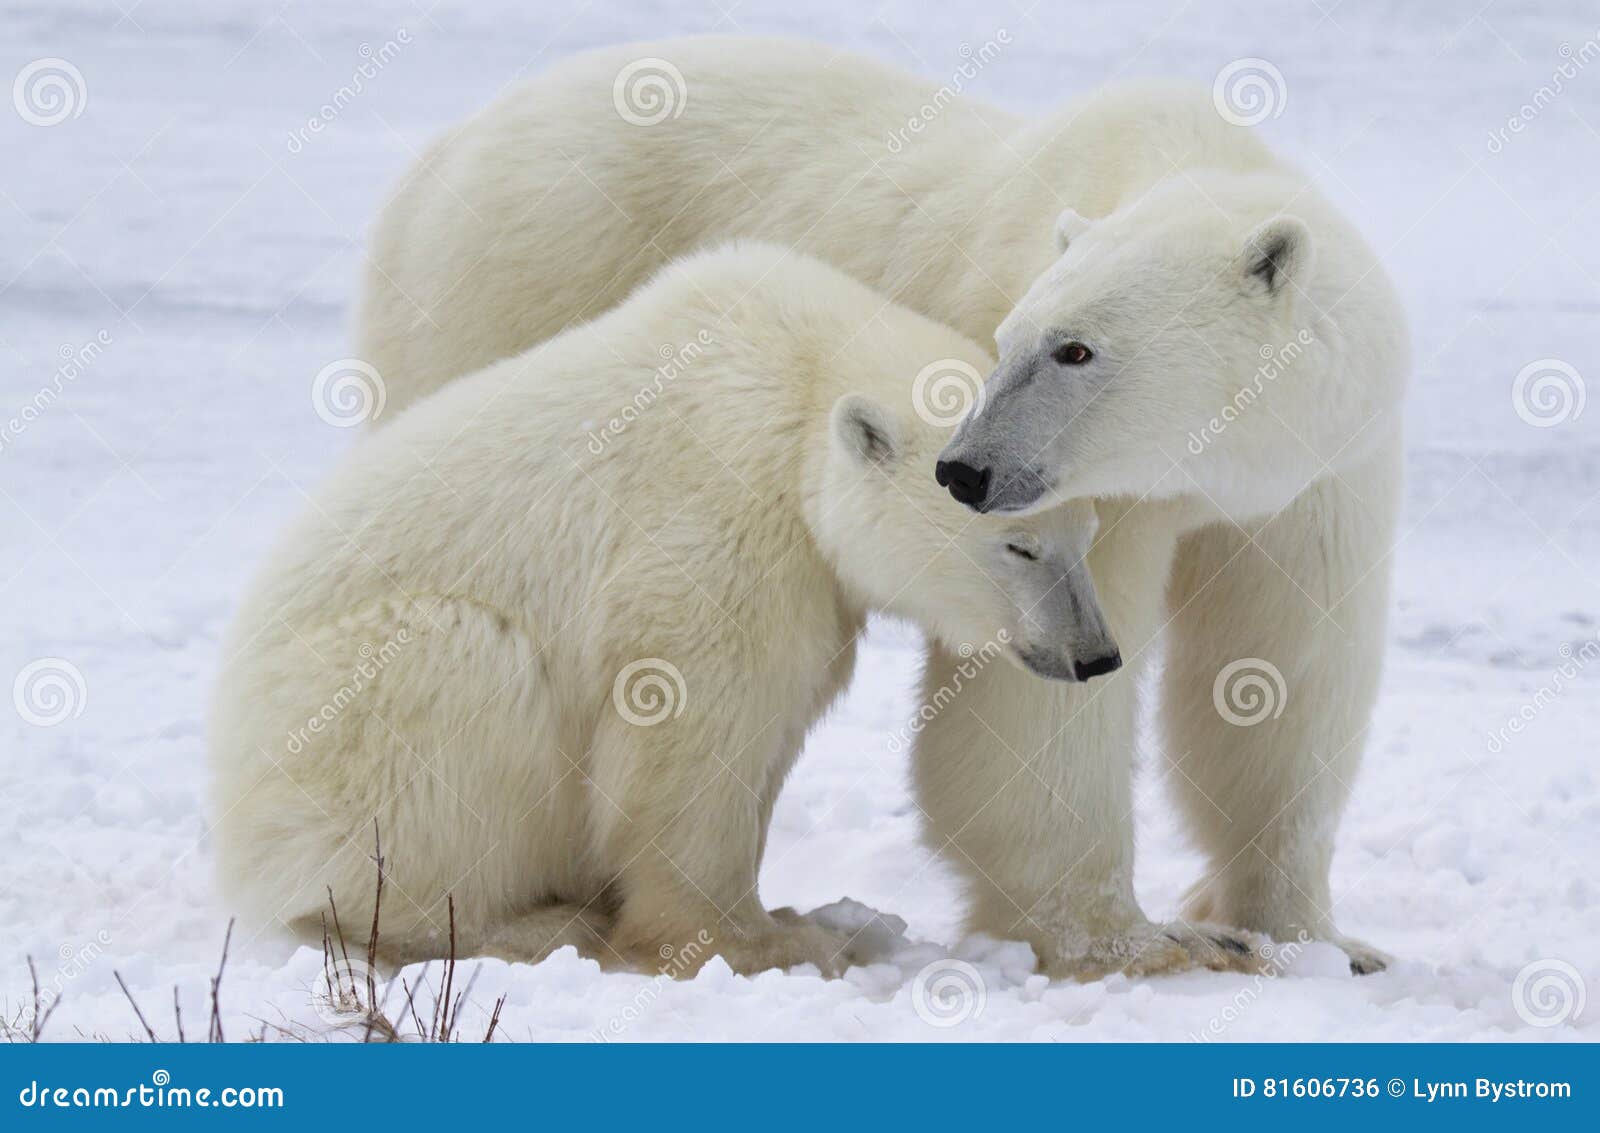 polar bear sow and cub